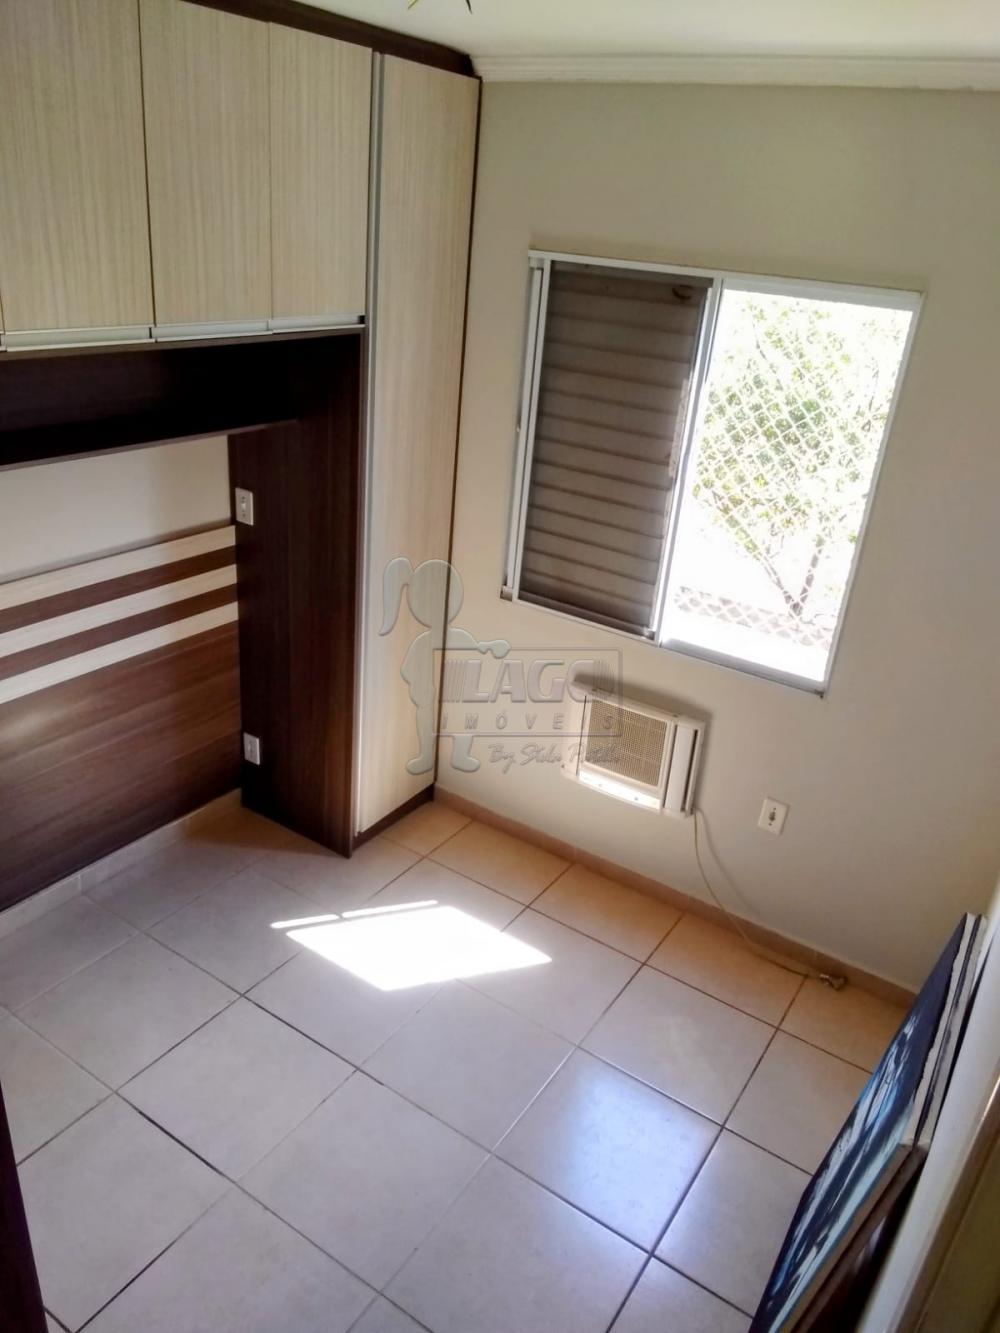 Comprar Apartamentos / Padrão em Ribeirão Preto R$ 170.000,00 - Foto 4